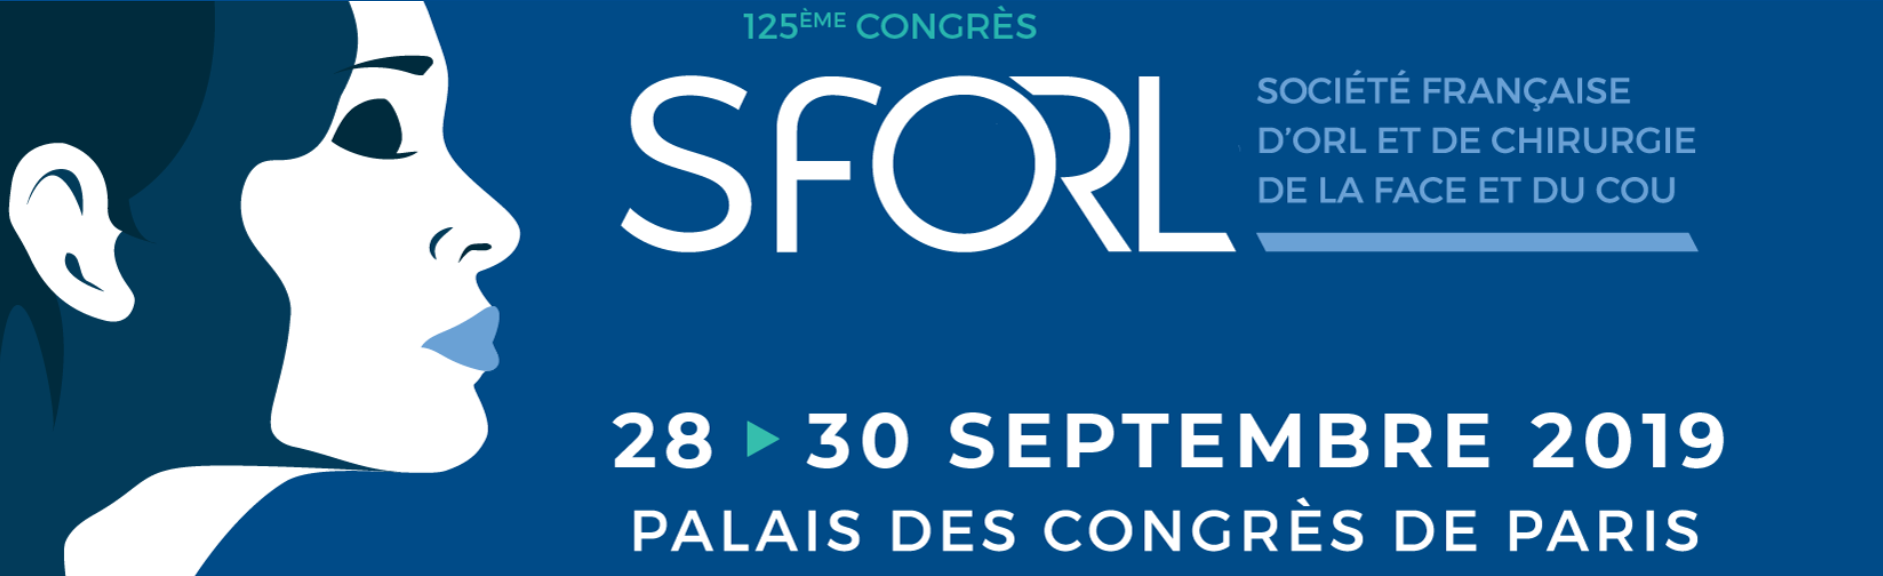 Congres annuel de la Societe Francaise d'ORL 2019